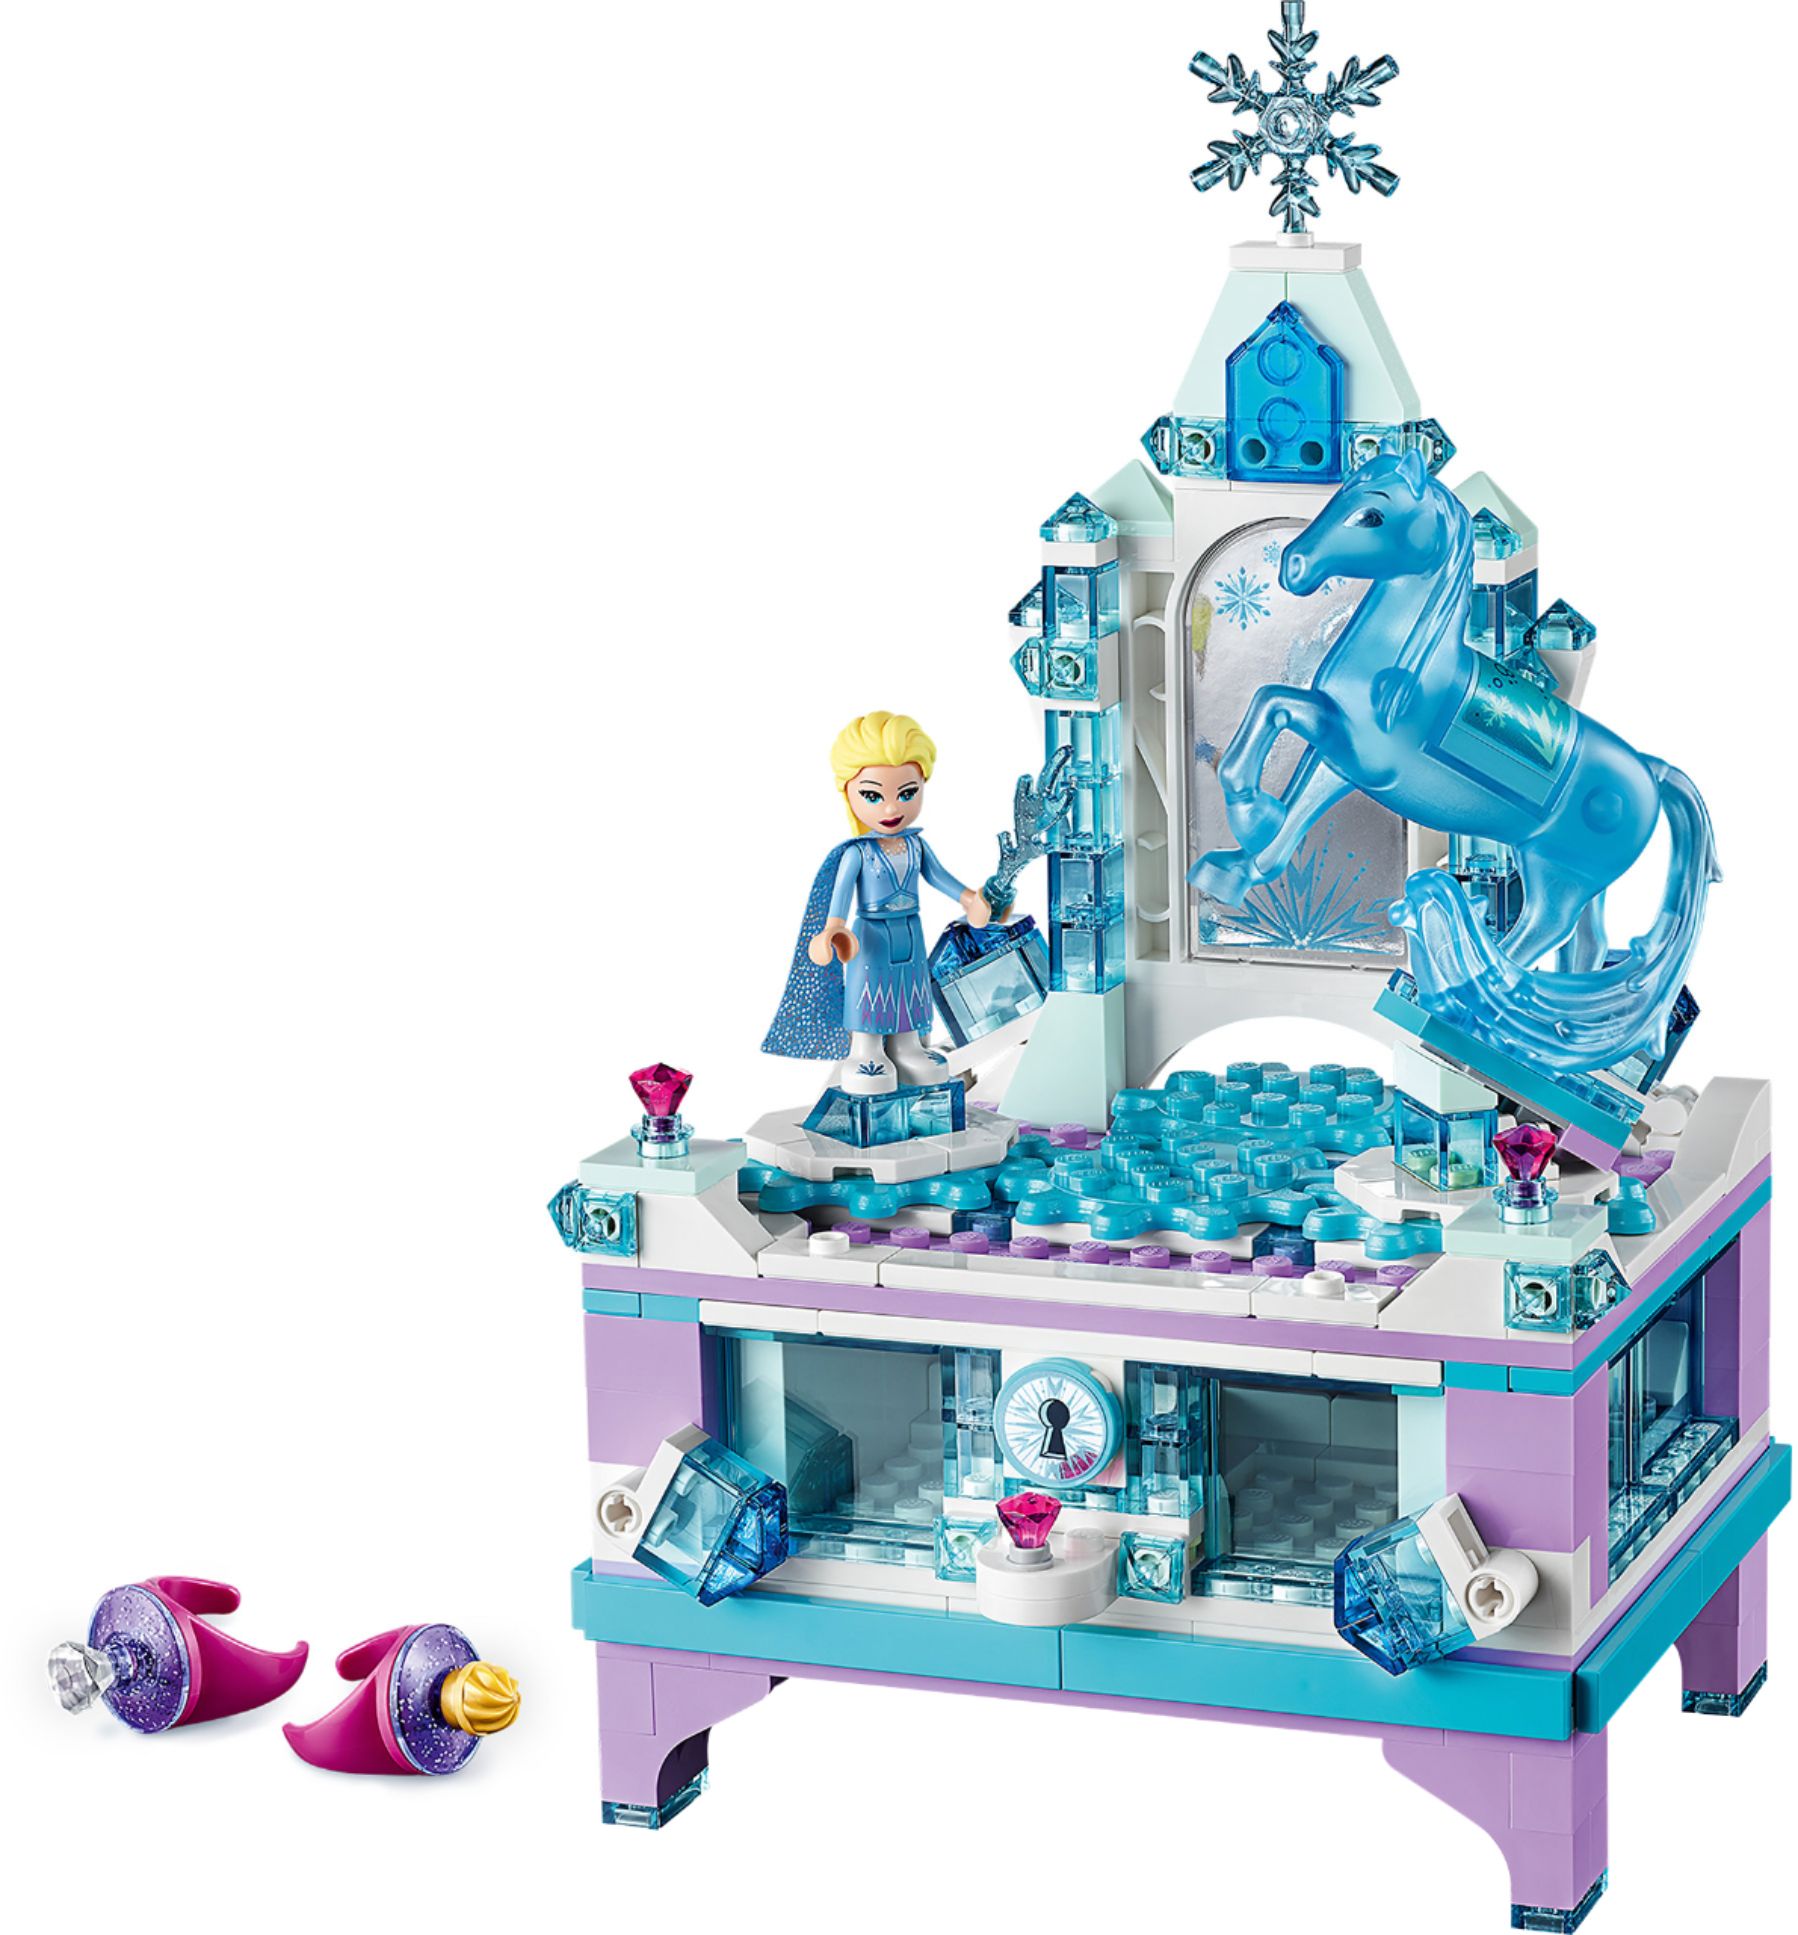 LEGO Disney Frozen II Jewelery 41168 - Buy